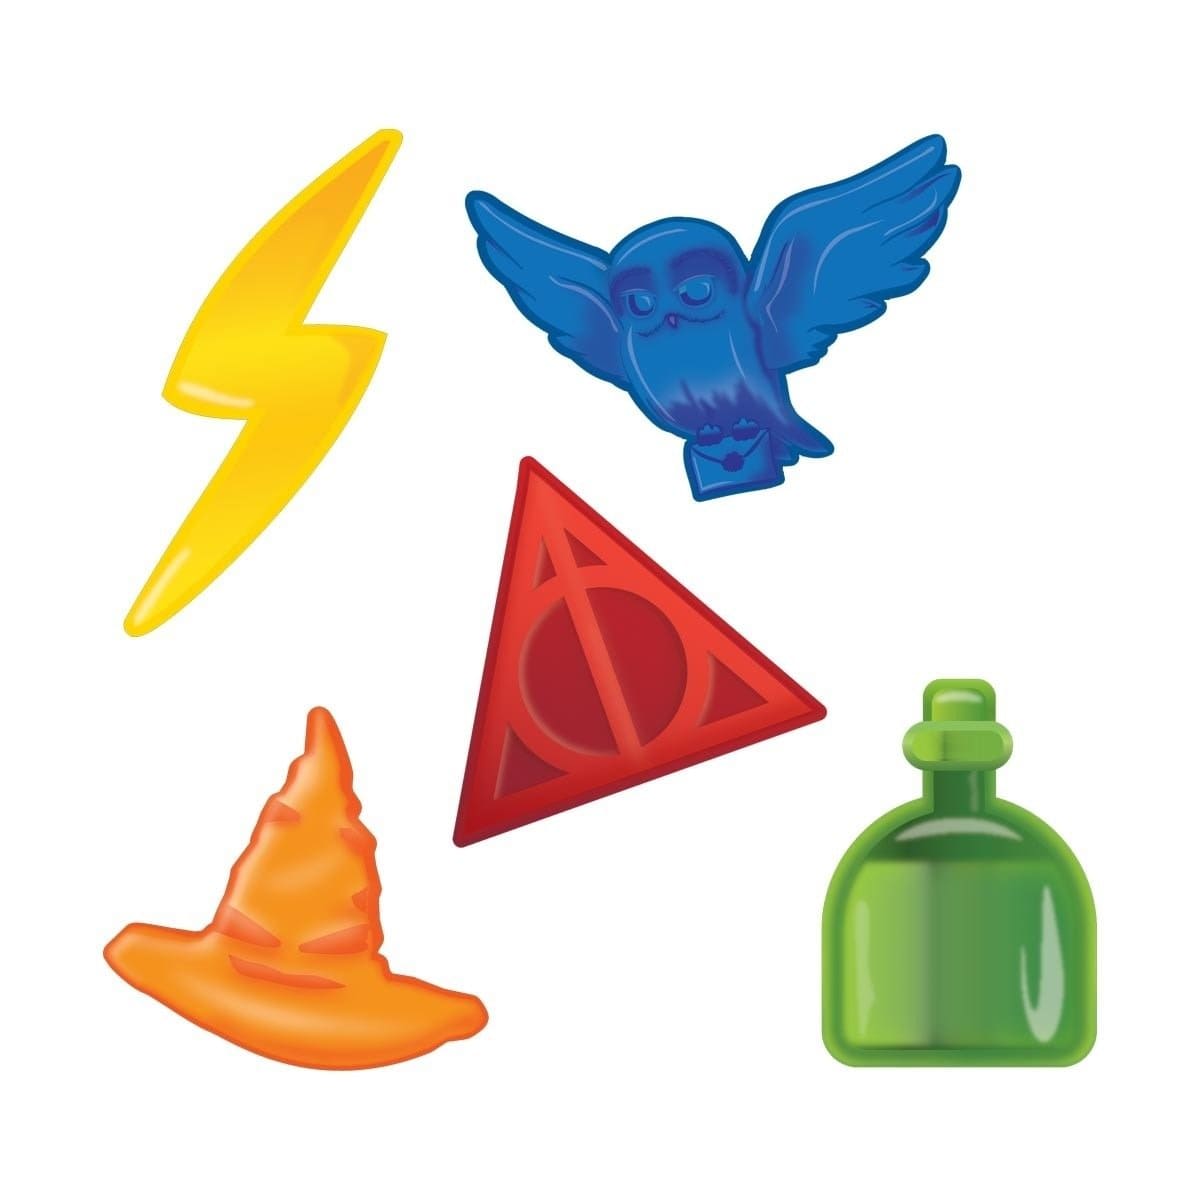 5 bonbons colorés sur fond blanc ; un éclair jaune, un hibou bleu, un choixpeau orange, une fiole verte et un triangle rouge